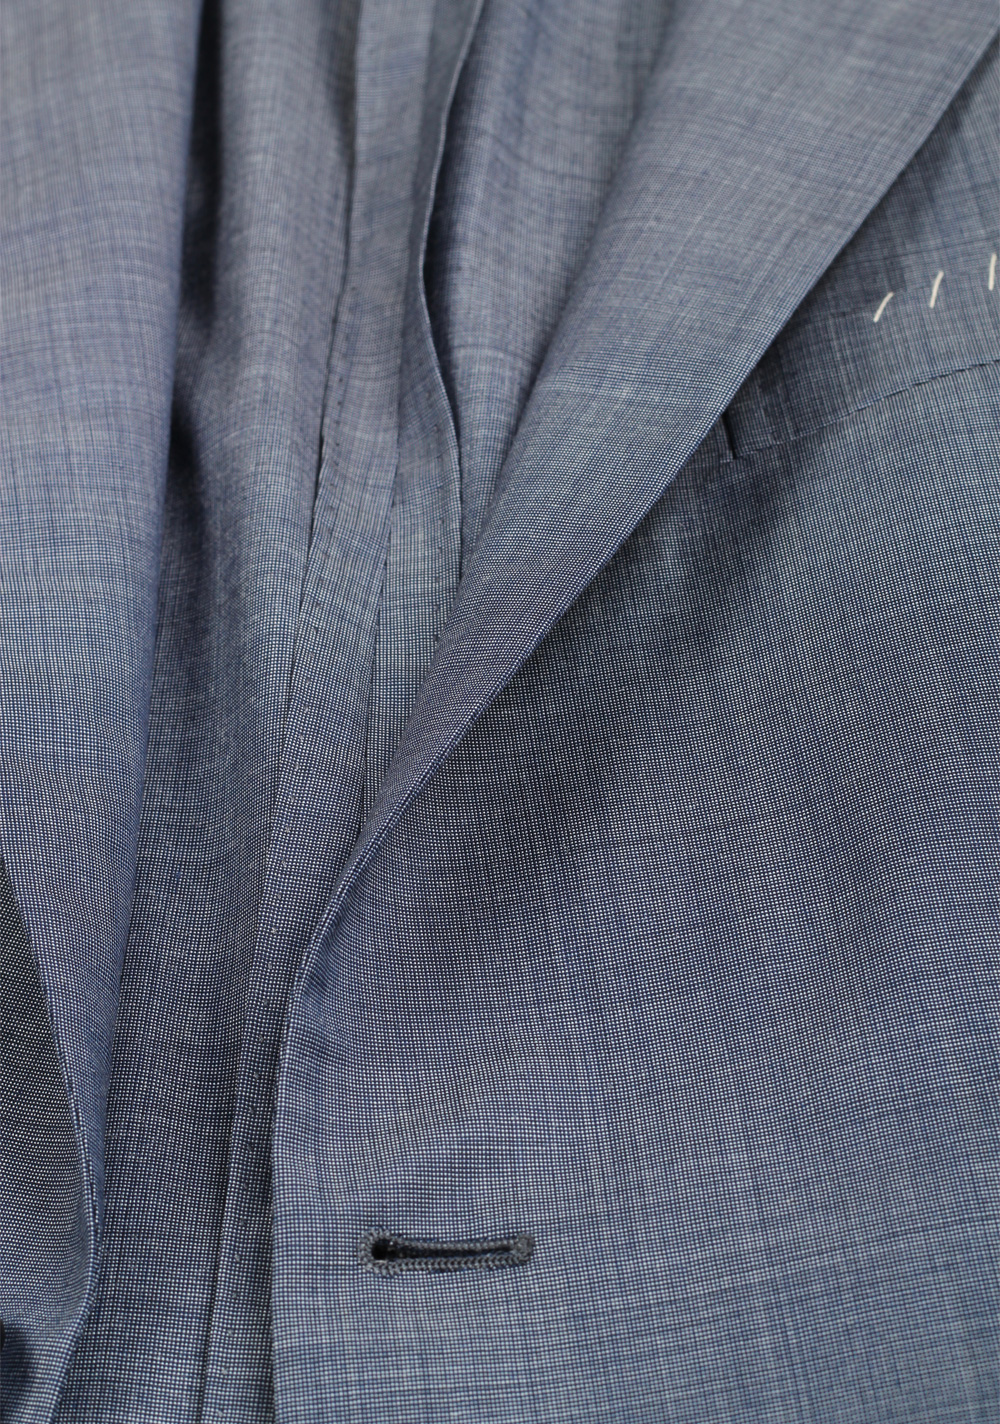 Boglioli 69 Blue Suit Size 54 / 44R U.S. | Costume Limité